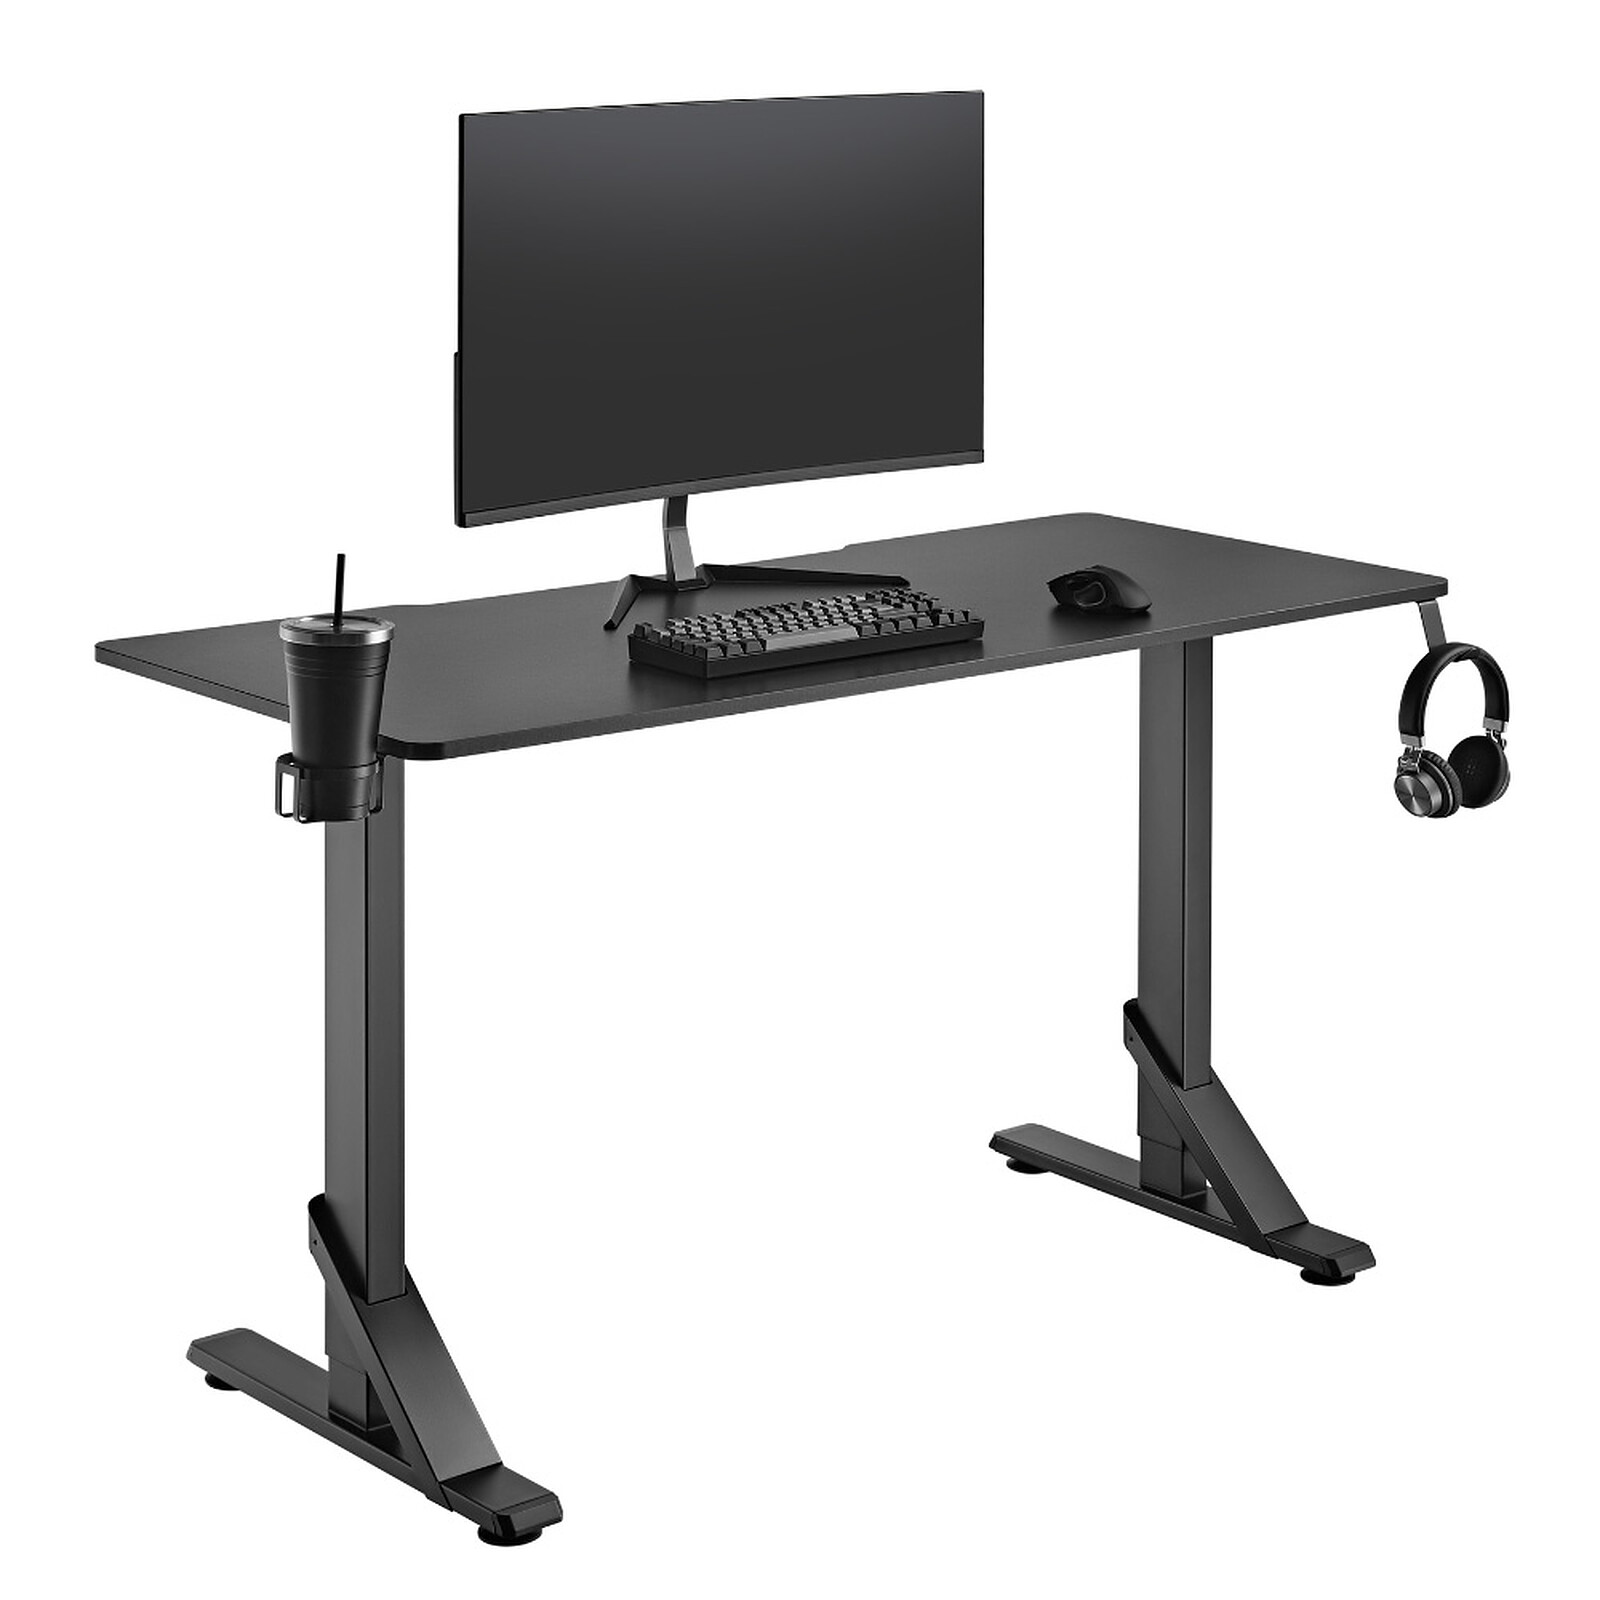 The G-Lab K-Desk Carbon - Meuble ordinateur - Garantie 3 ans LDLC